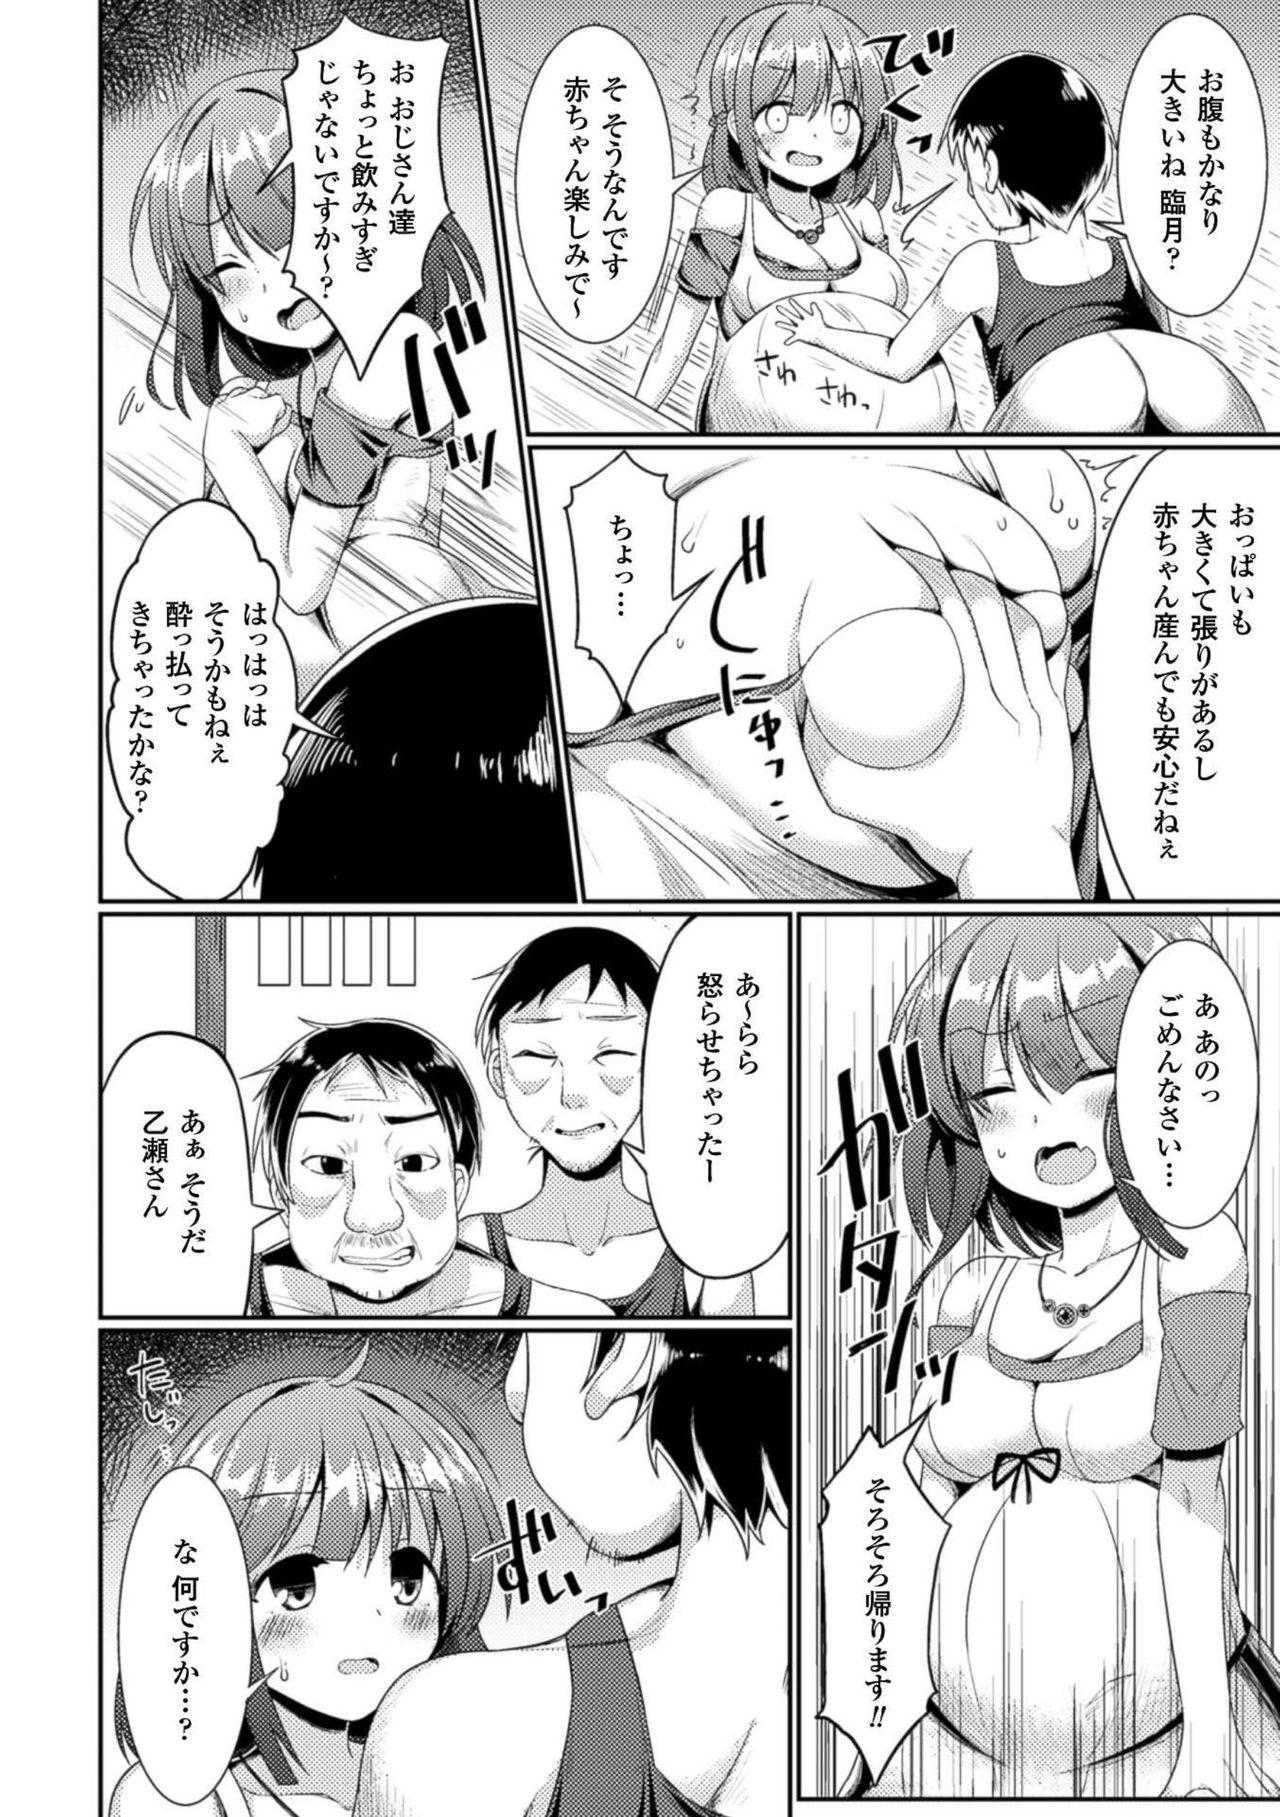 2D Comic Magazine Botebara Sex de Nikubenki Ochi! Vol. 1 7